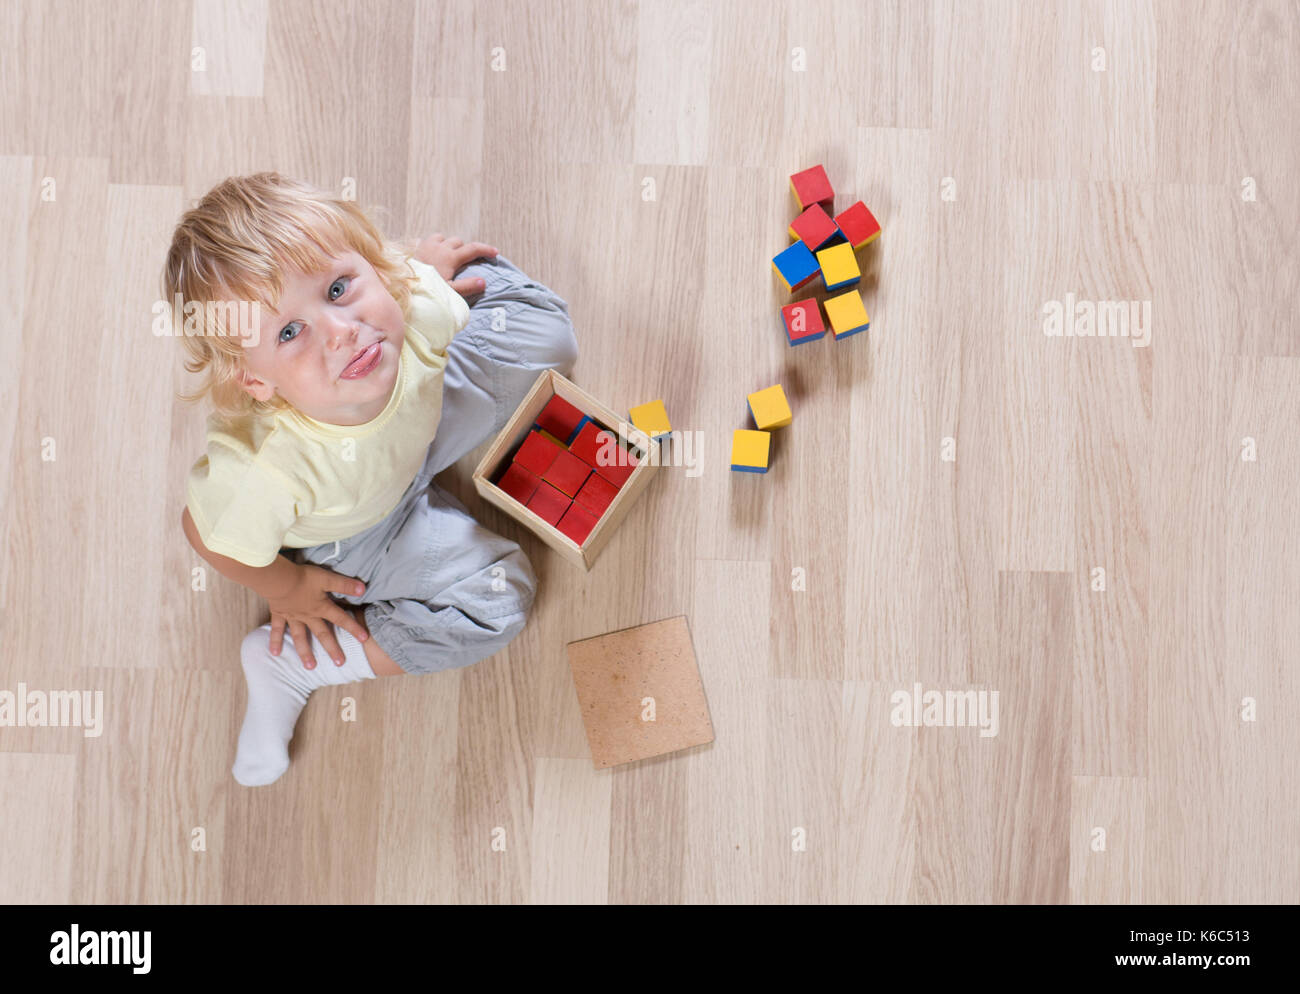 Kind spielt mit Spielzeug auf Stock-Draufsicht Stockfoto